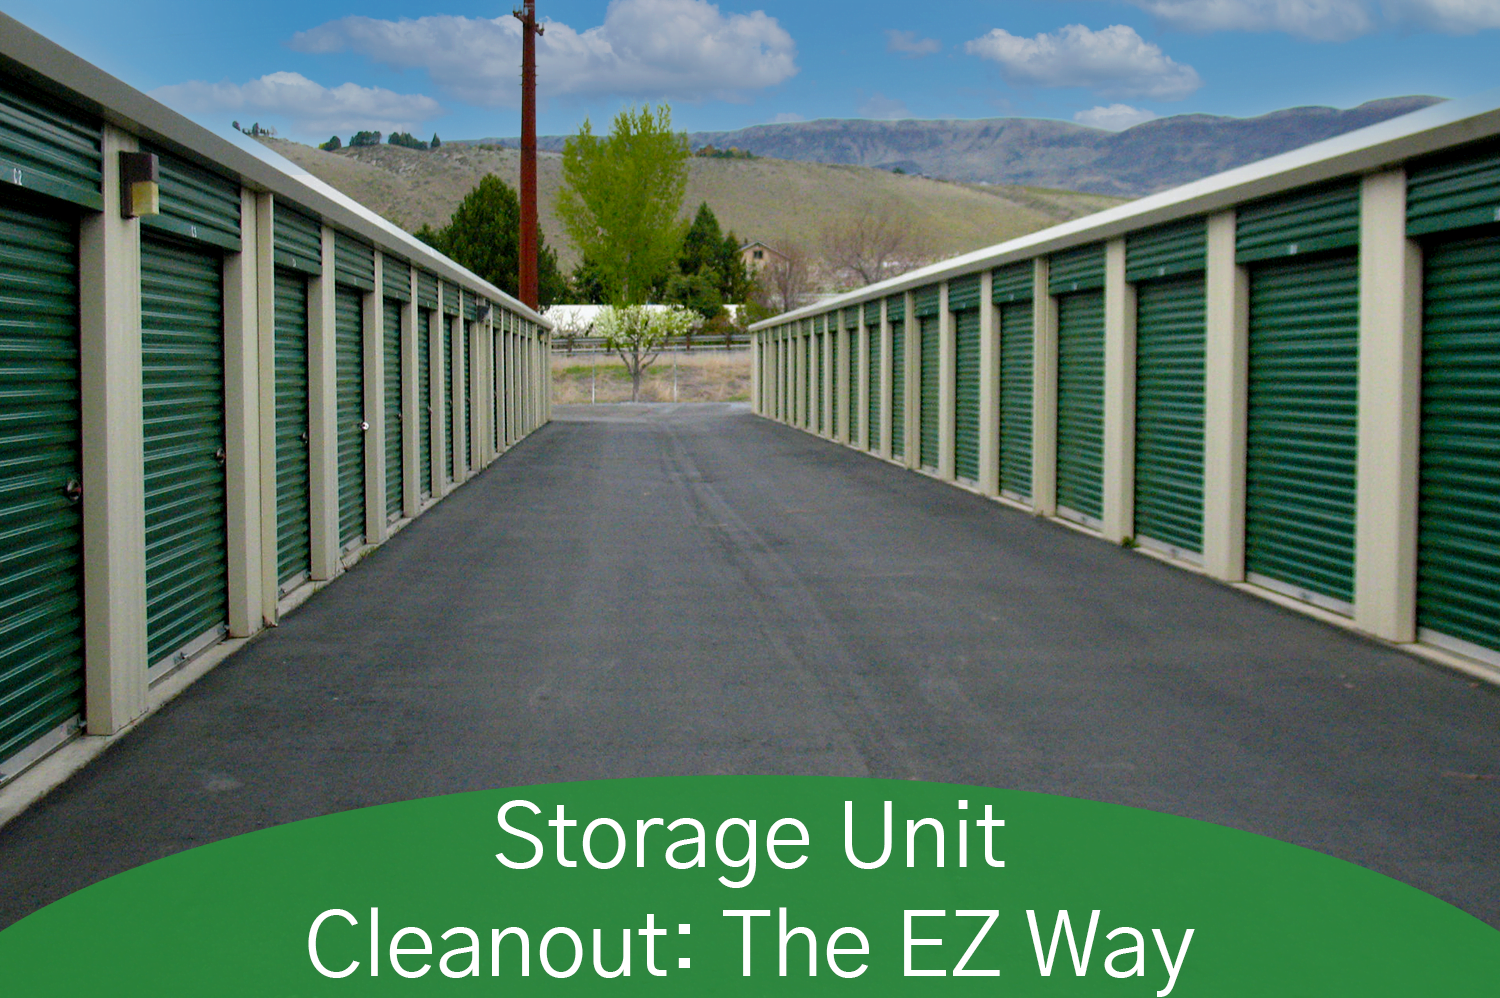 EZ Access Storage units, ready for a storage unit cleanout.